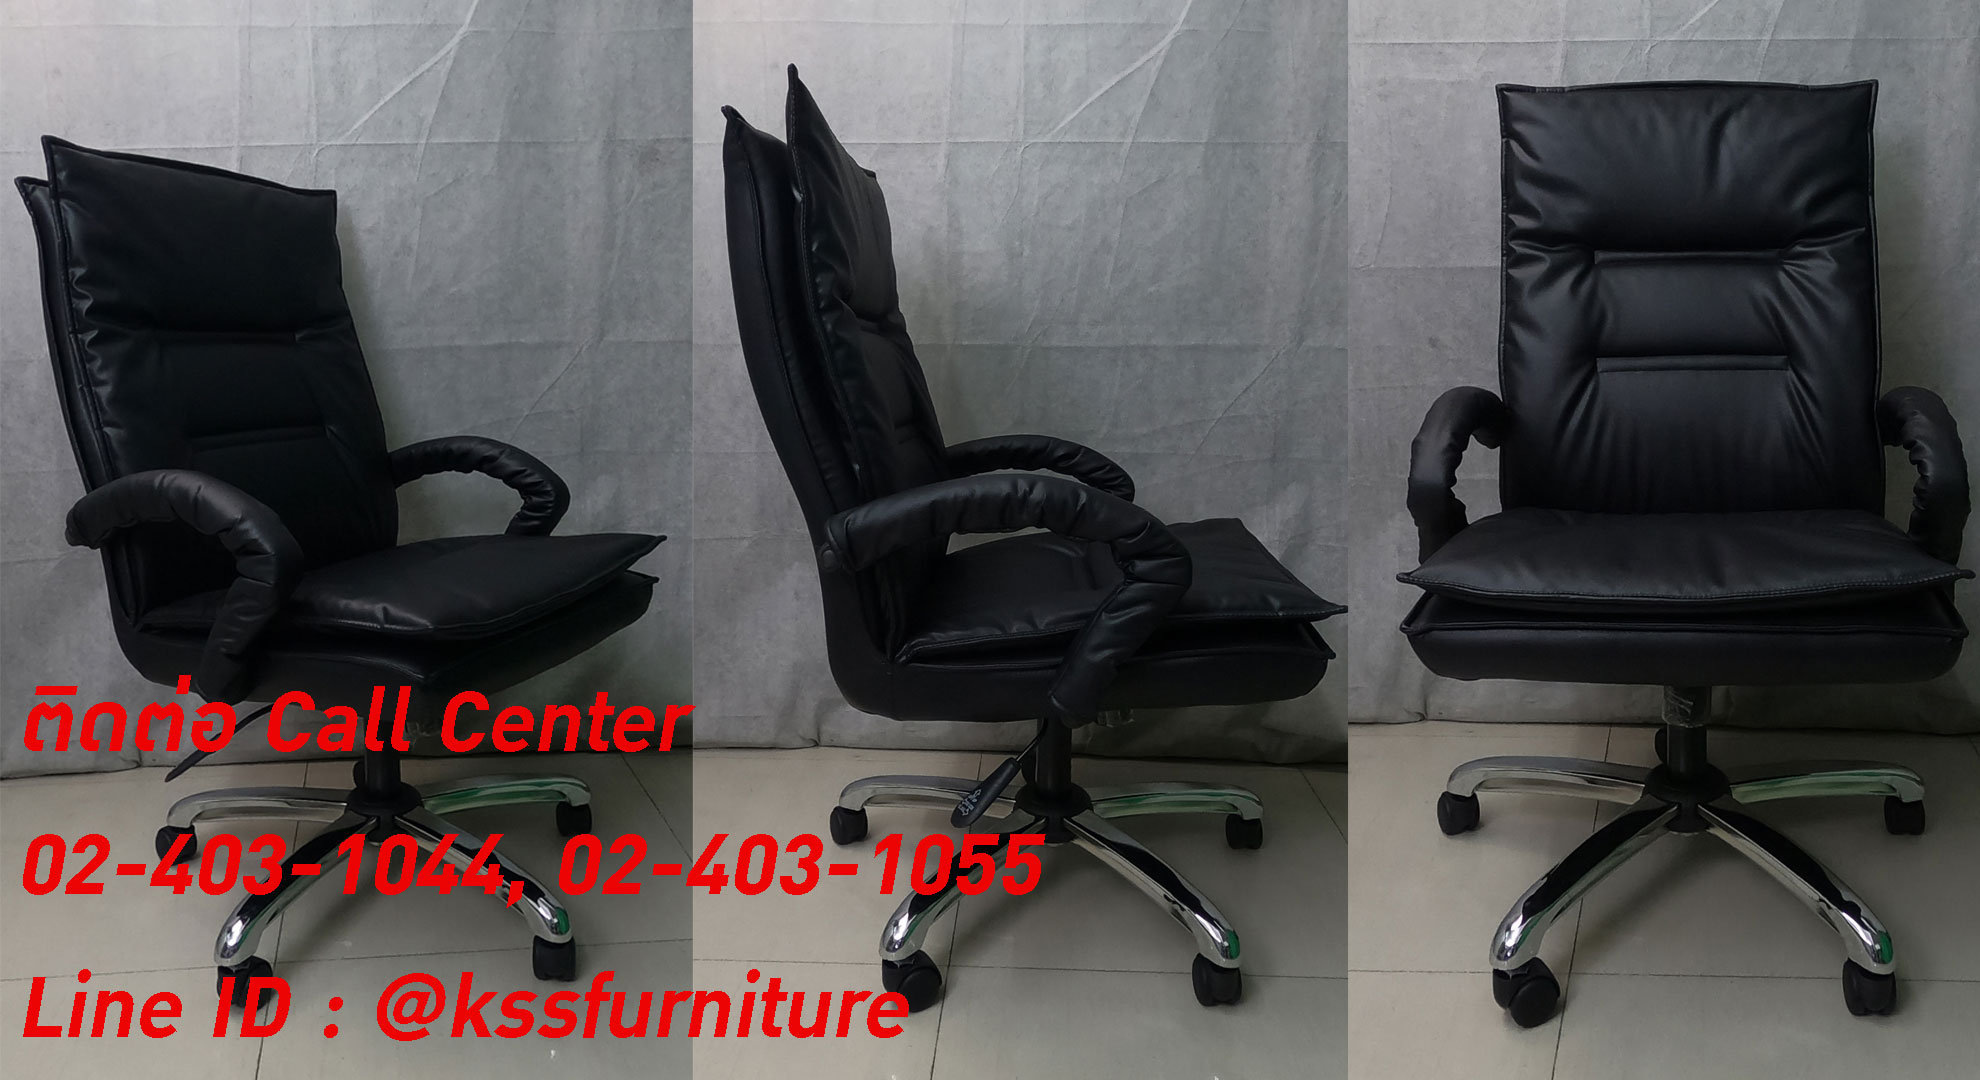 72032::SK-018M/C(ขาชุบ)::เก้าอี้สำนักงานพนักพิงกลาง SK-018M/C(ขาชุบ) แบบก้อนโยก ขนาด W63 x D70 x H100 cm. หนังPVCเลือกสีได้ ปรับสูงต่ำด้วยระบบโช็คแก๊ส (ขาชุบโครเมี่ยม,ขาชุบโครเมี่ยมเหลี่ยม) เก้าอี้สำนักงาน CHAWIN